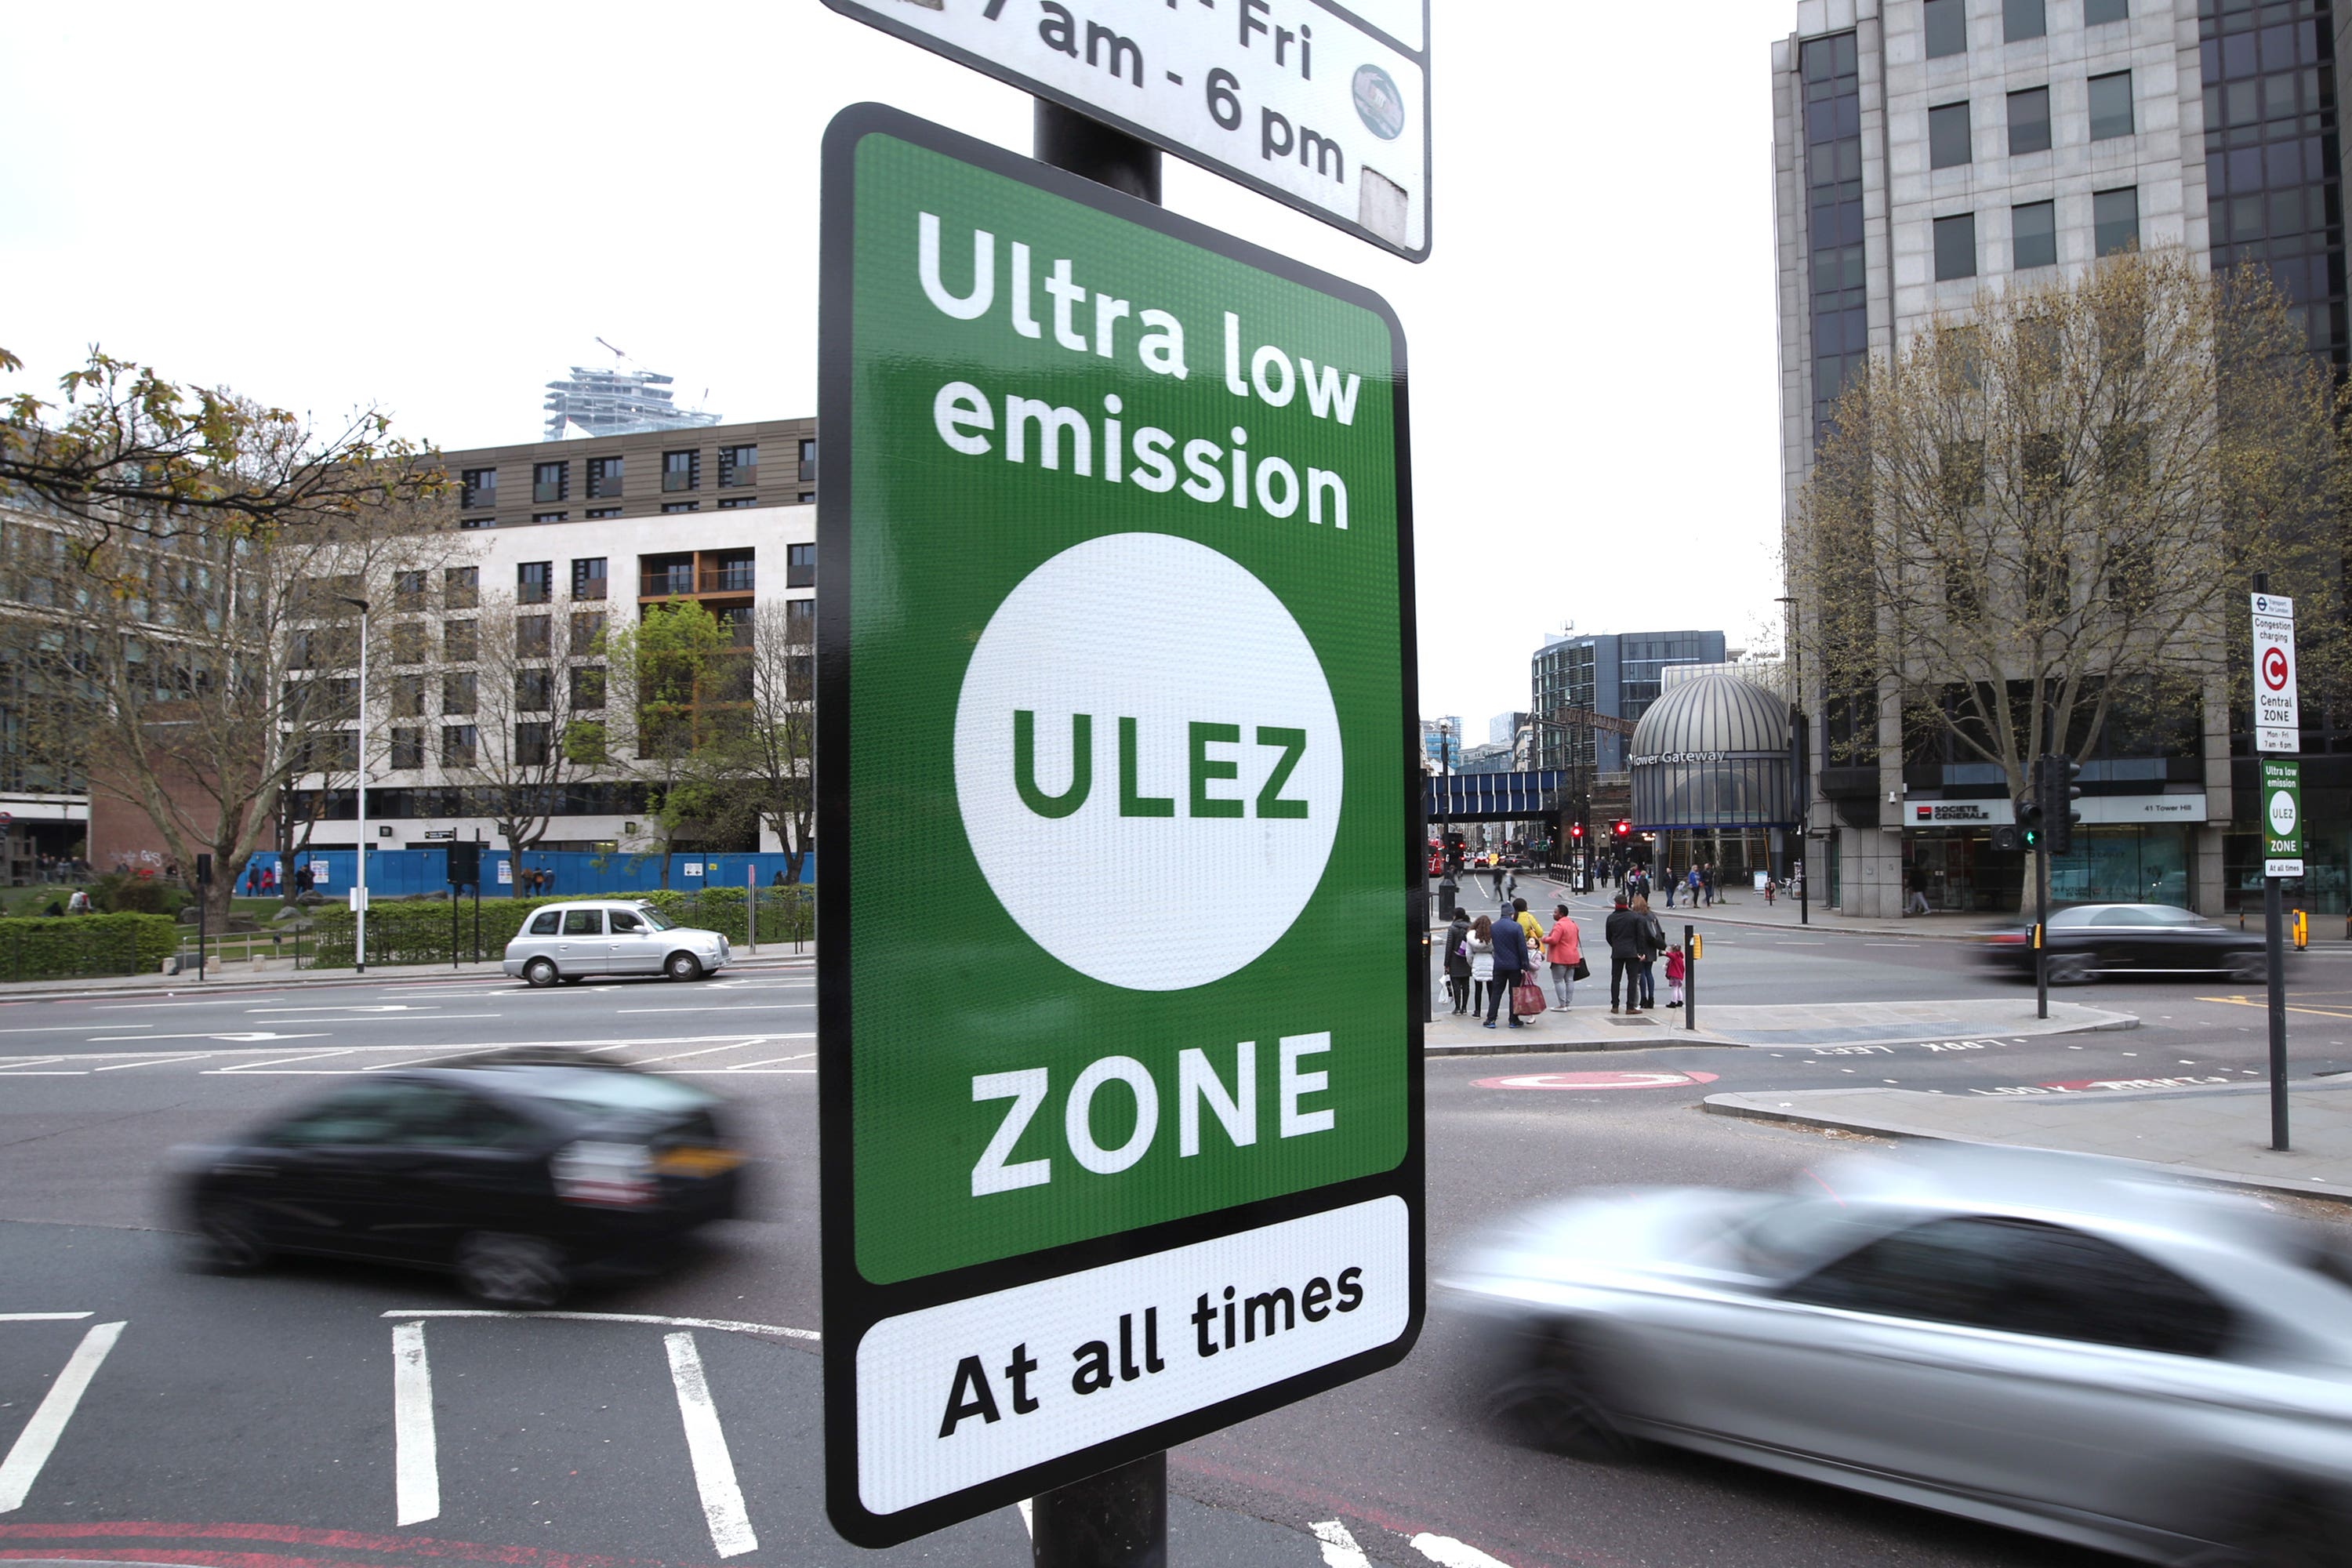 London’s Ulez scheme expands on 29 August